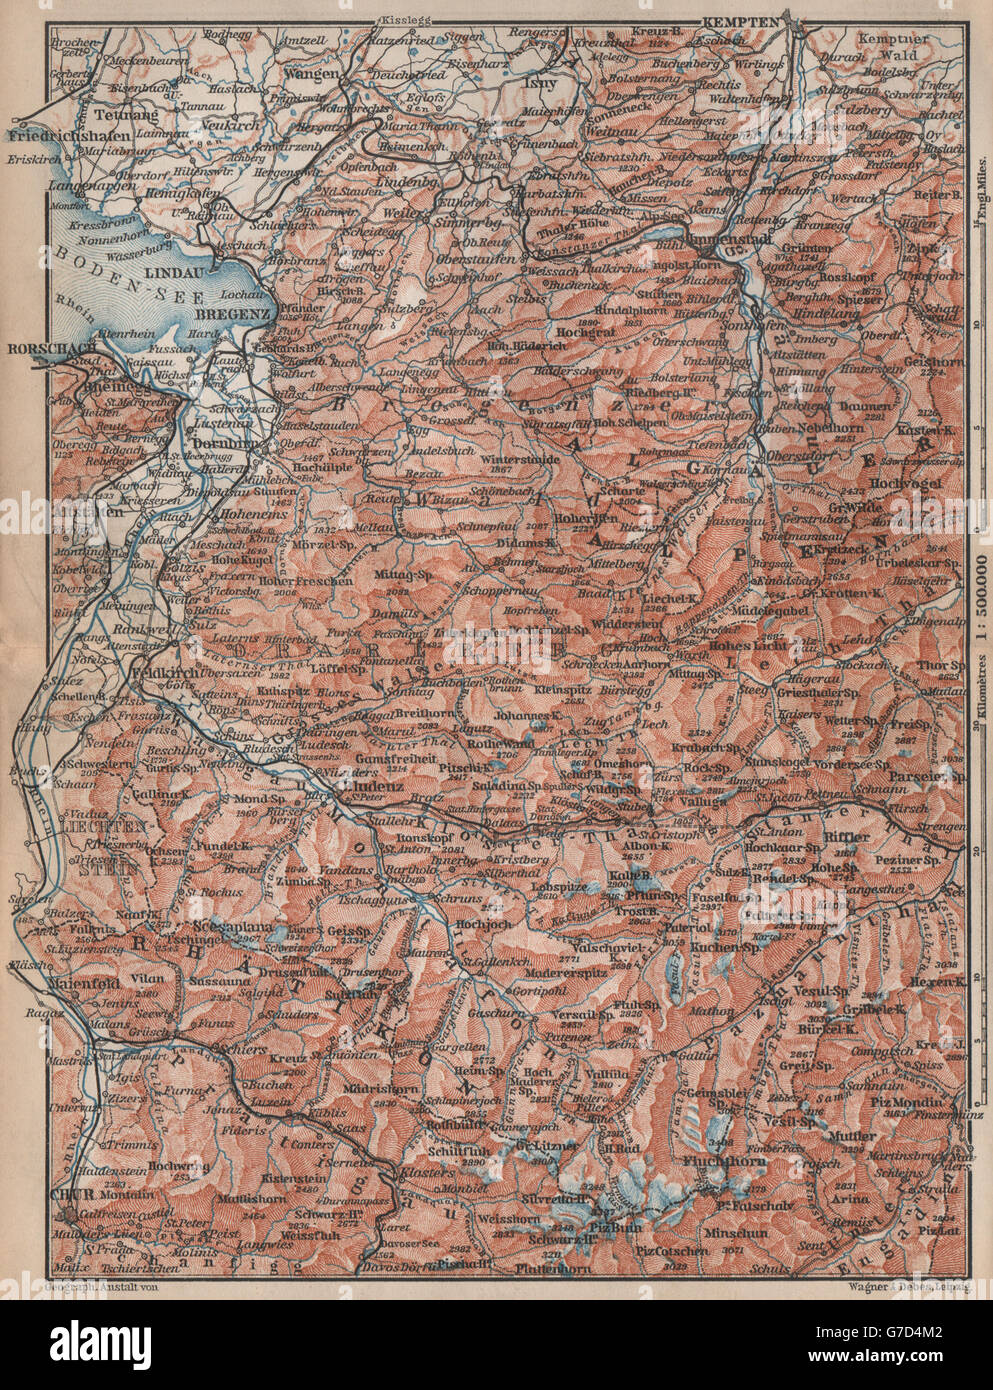 VORARLBERG & BREGENZER WALD. Bludenz St Anton Zürs Lech See Ischgl, 1896 map Stock Photo